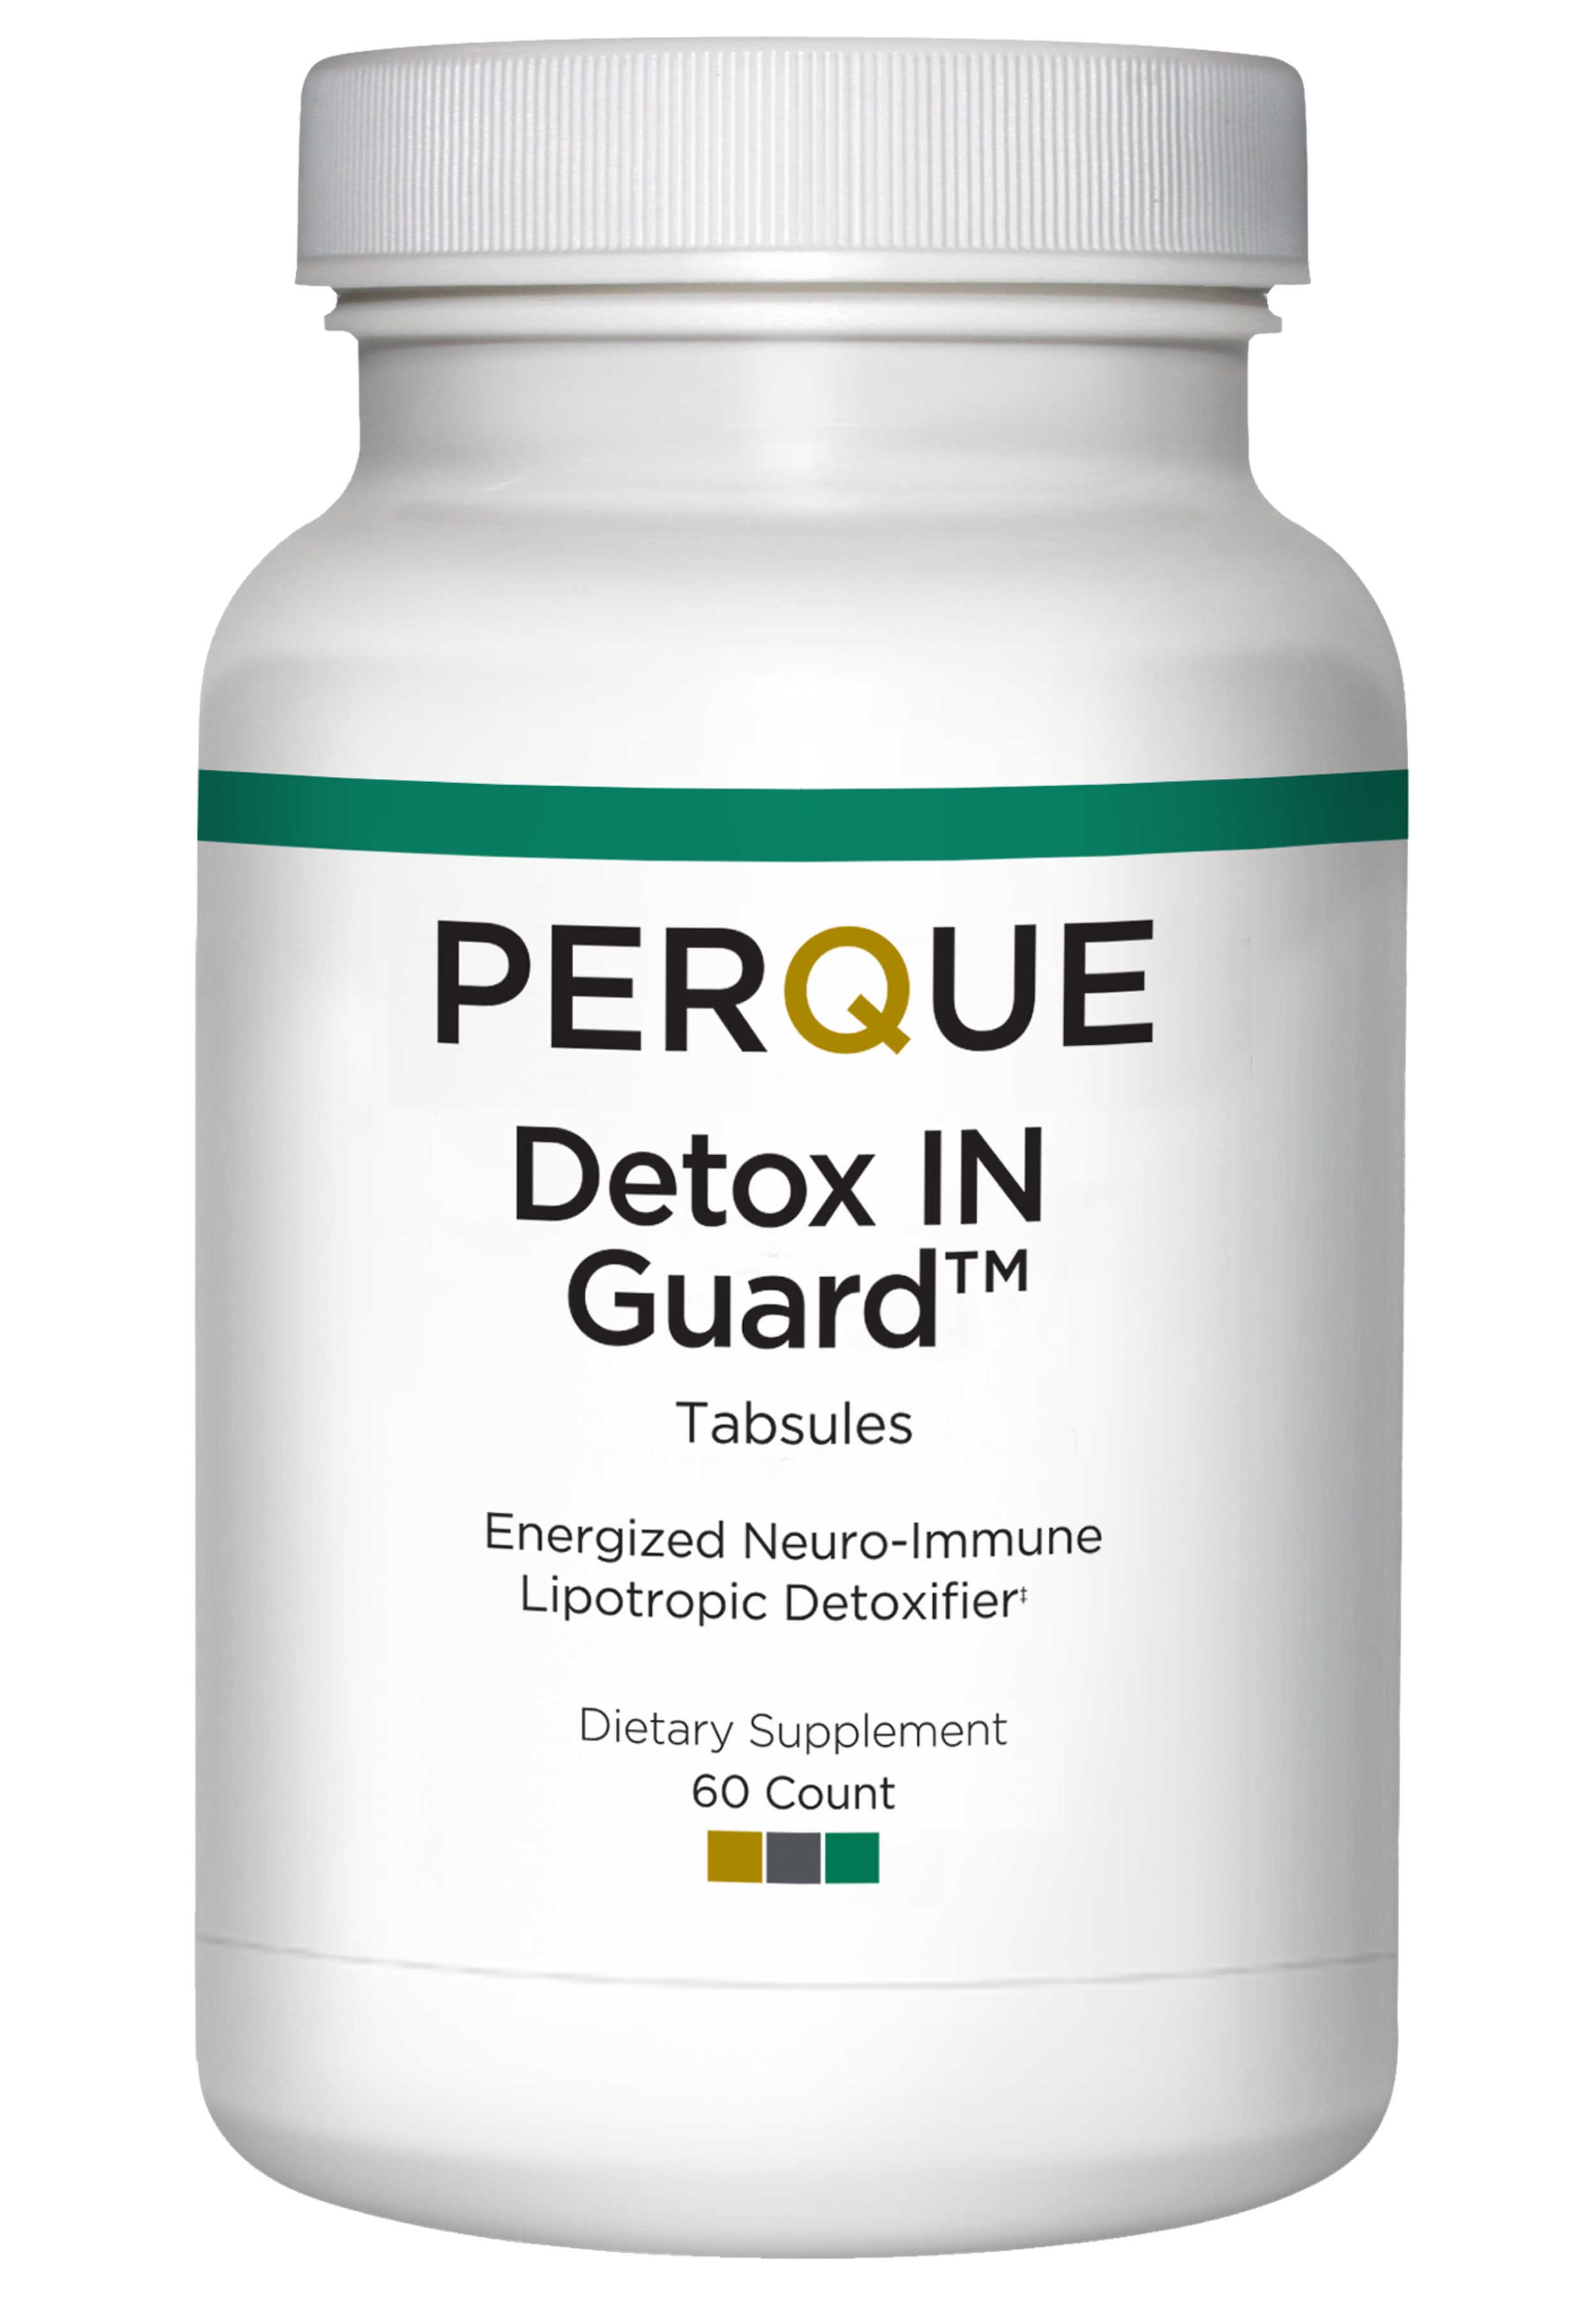 Perque Detox IN Guard